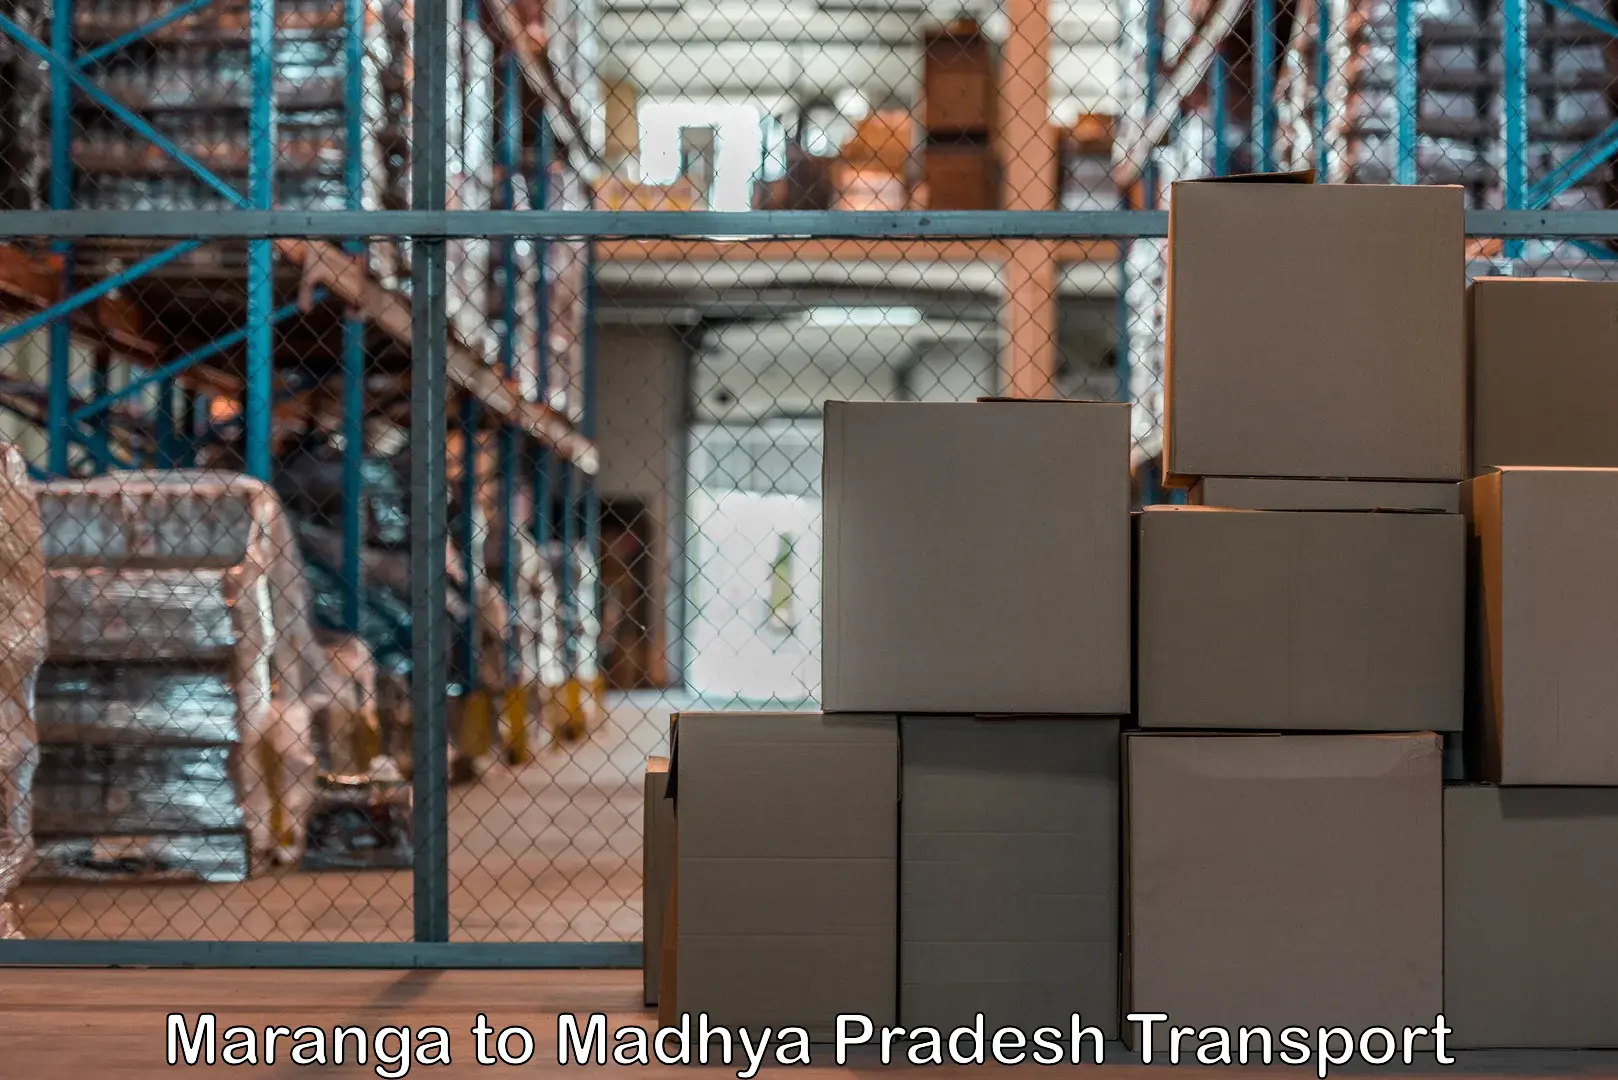 Truck transport companies in India Maranga to Silwani